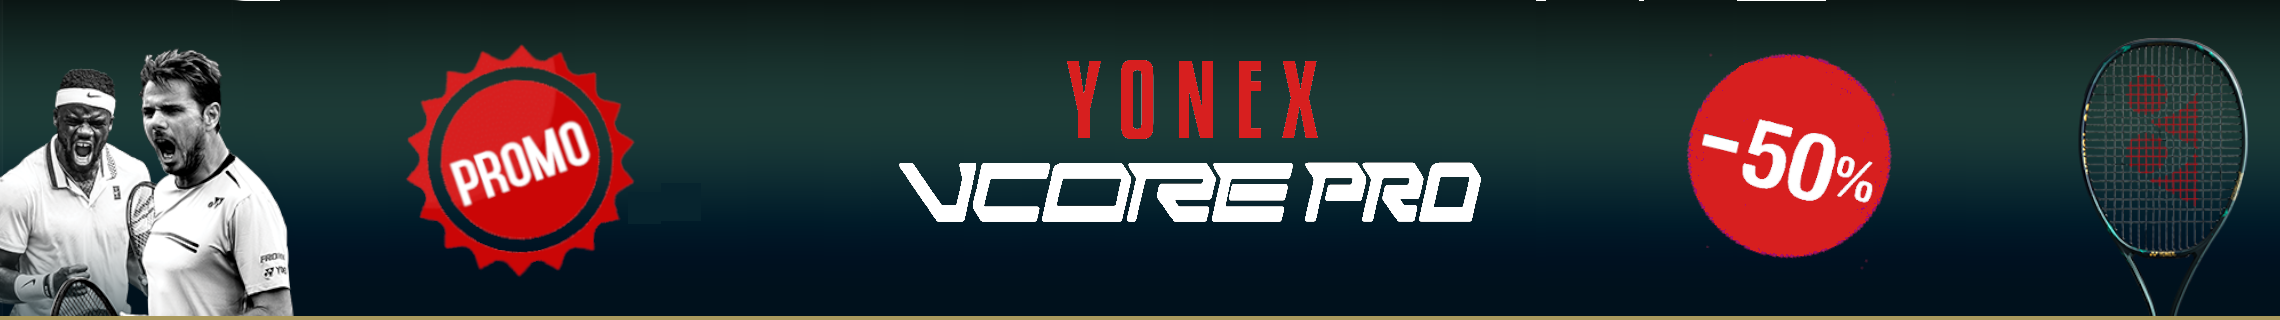 Promo Yonex 2020